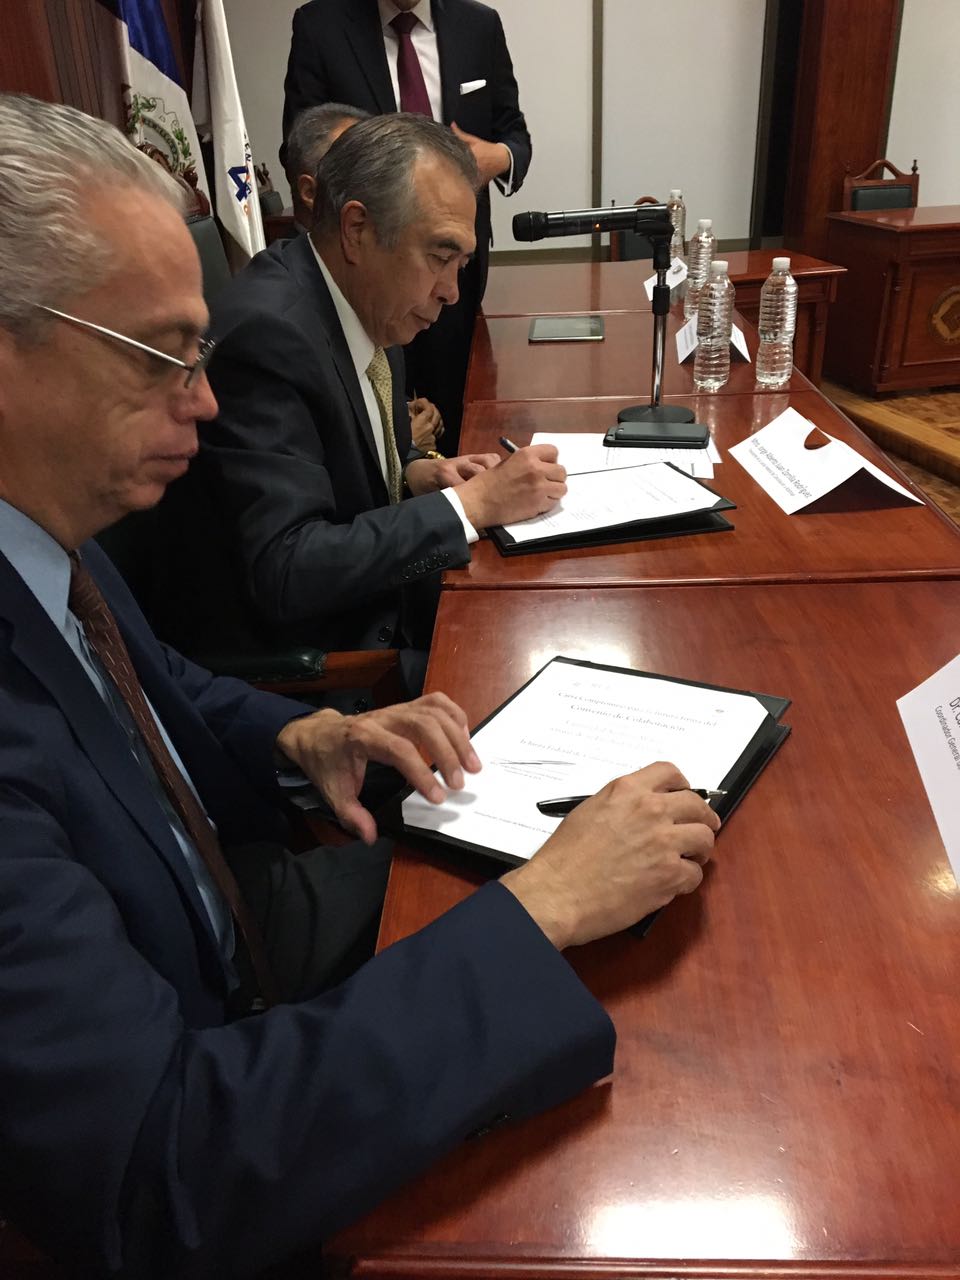 El Presidente de la Junta Federal de Conciliación y Arbitraje, firma de Convenio con la Universidad Anáhuac.